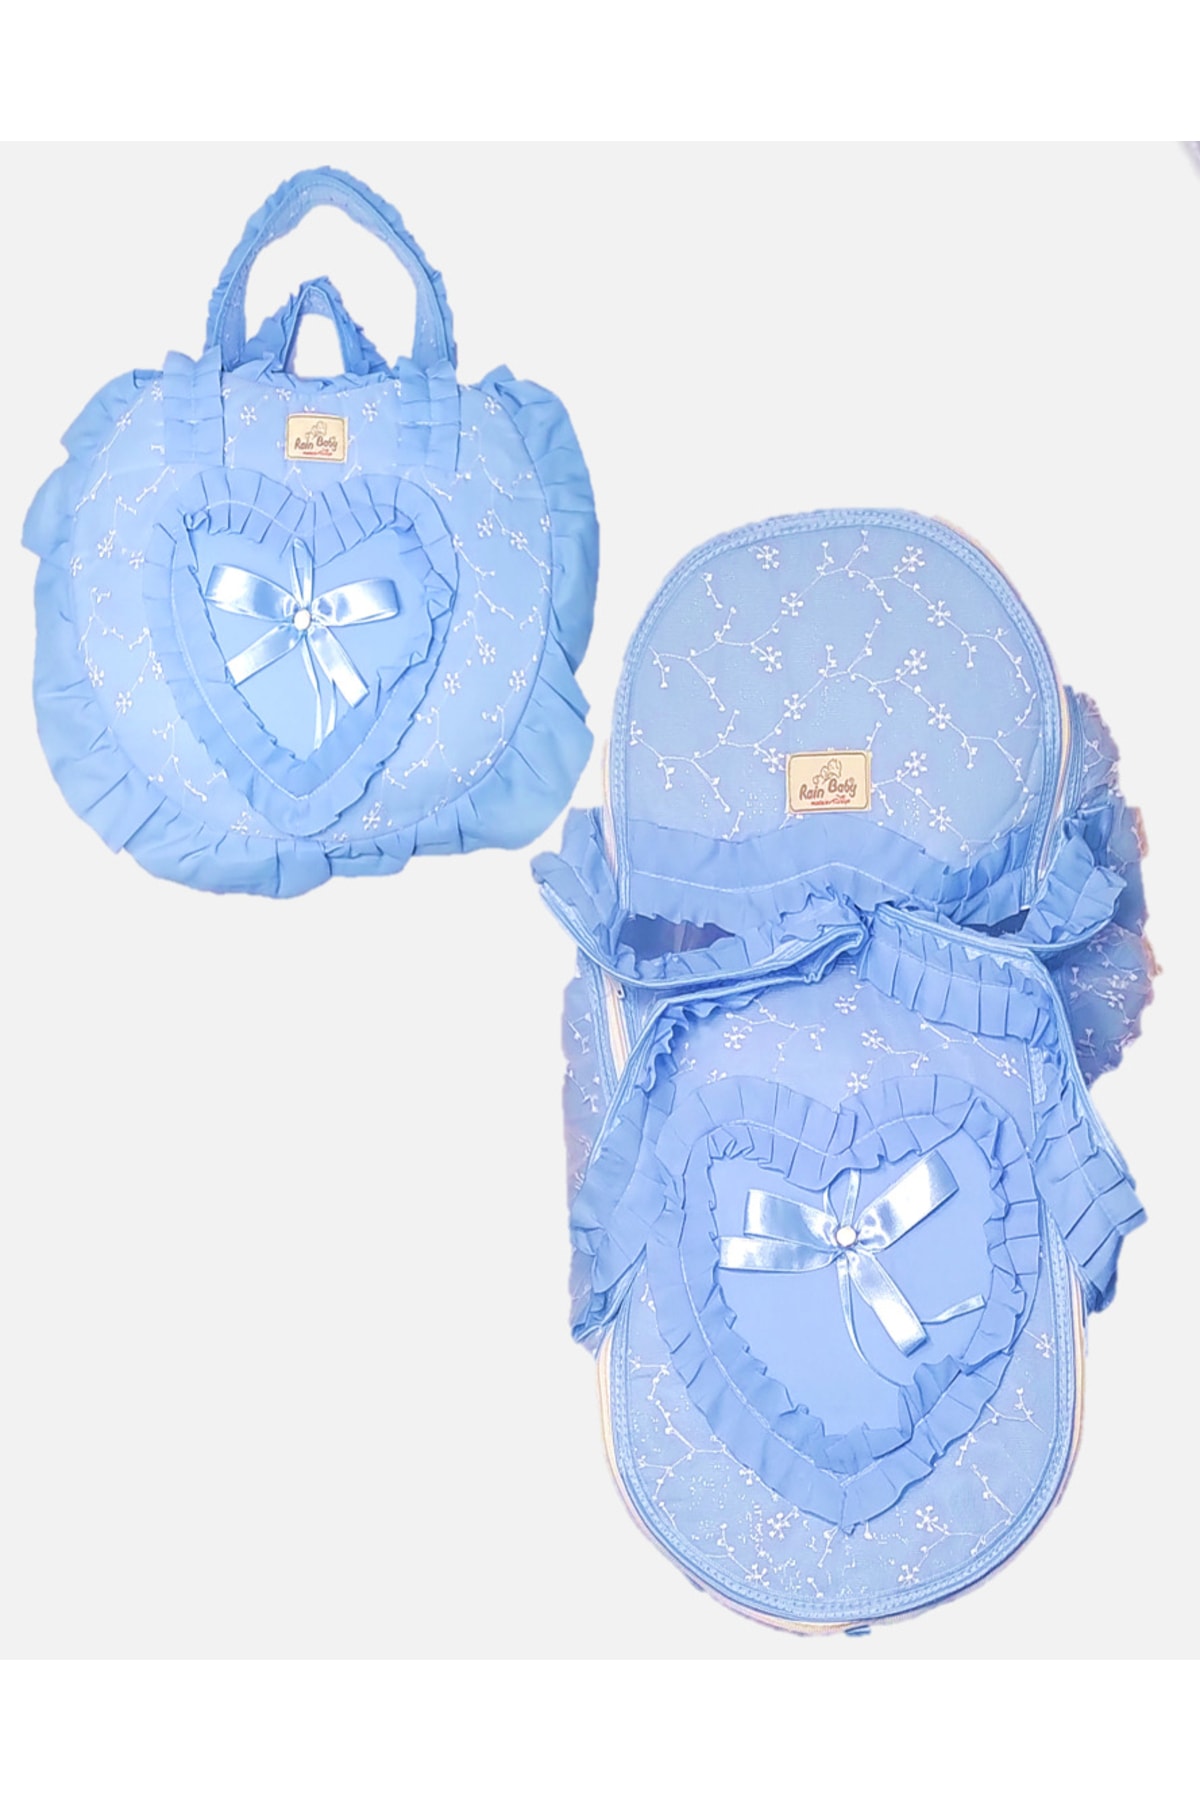 miniklife Tütülü Kalpli Bebek Bakım Çantası Ve Portbebe 2 Li Bebek Taşıma Seti